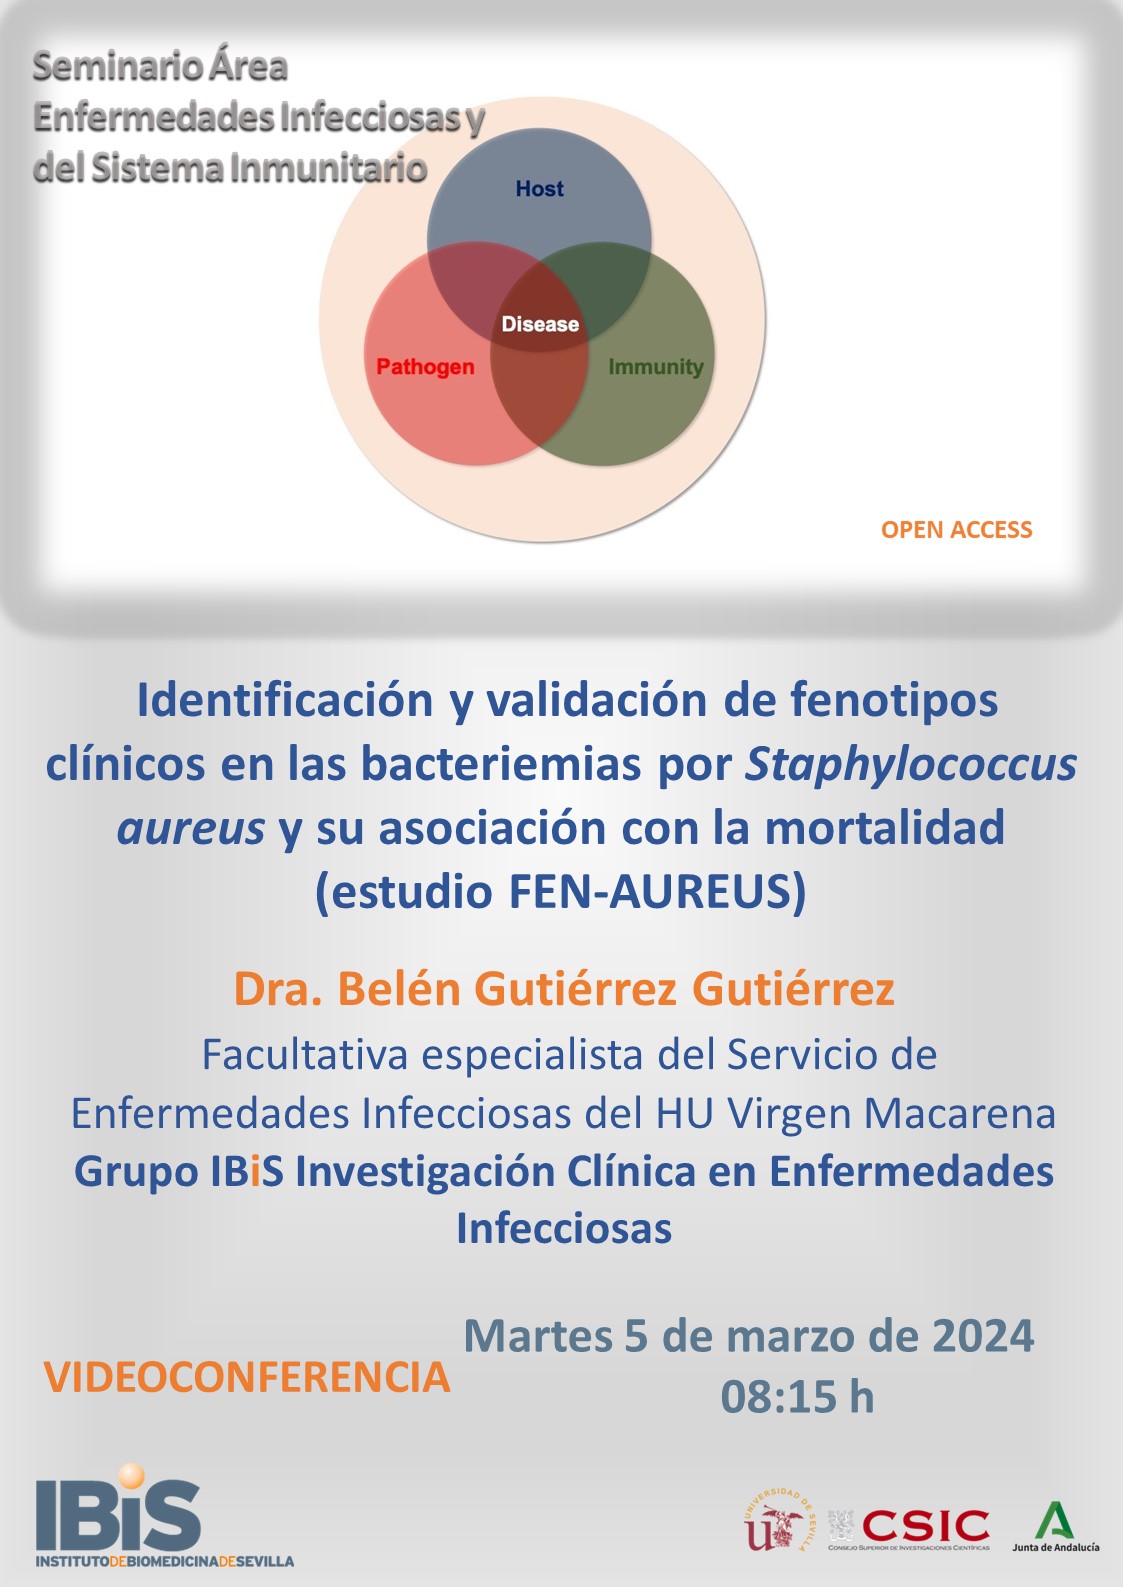 Poster: Identificación y validación de fenotipos clínicos en las bacteriemias por *Staphylococcus aureus* y su asociación con la mortalidad (estudio FEN-AUREUS)